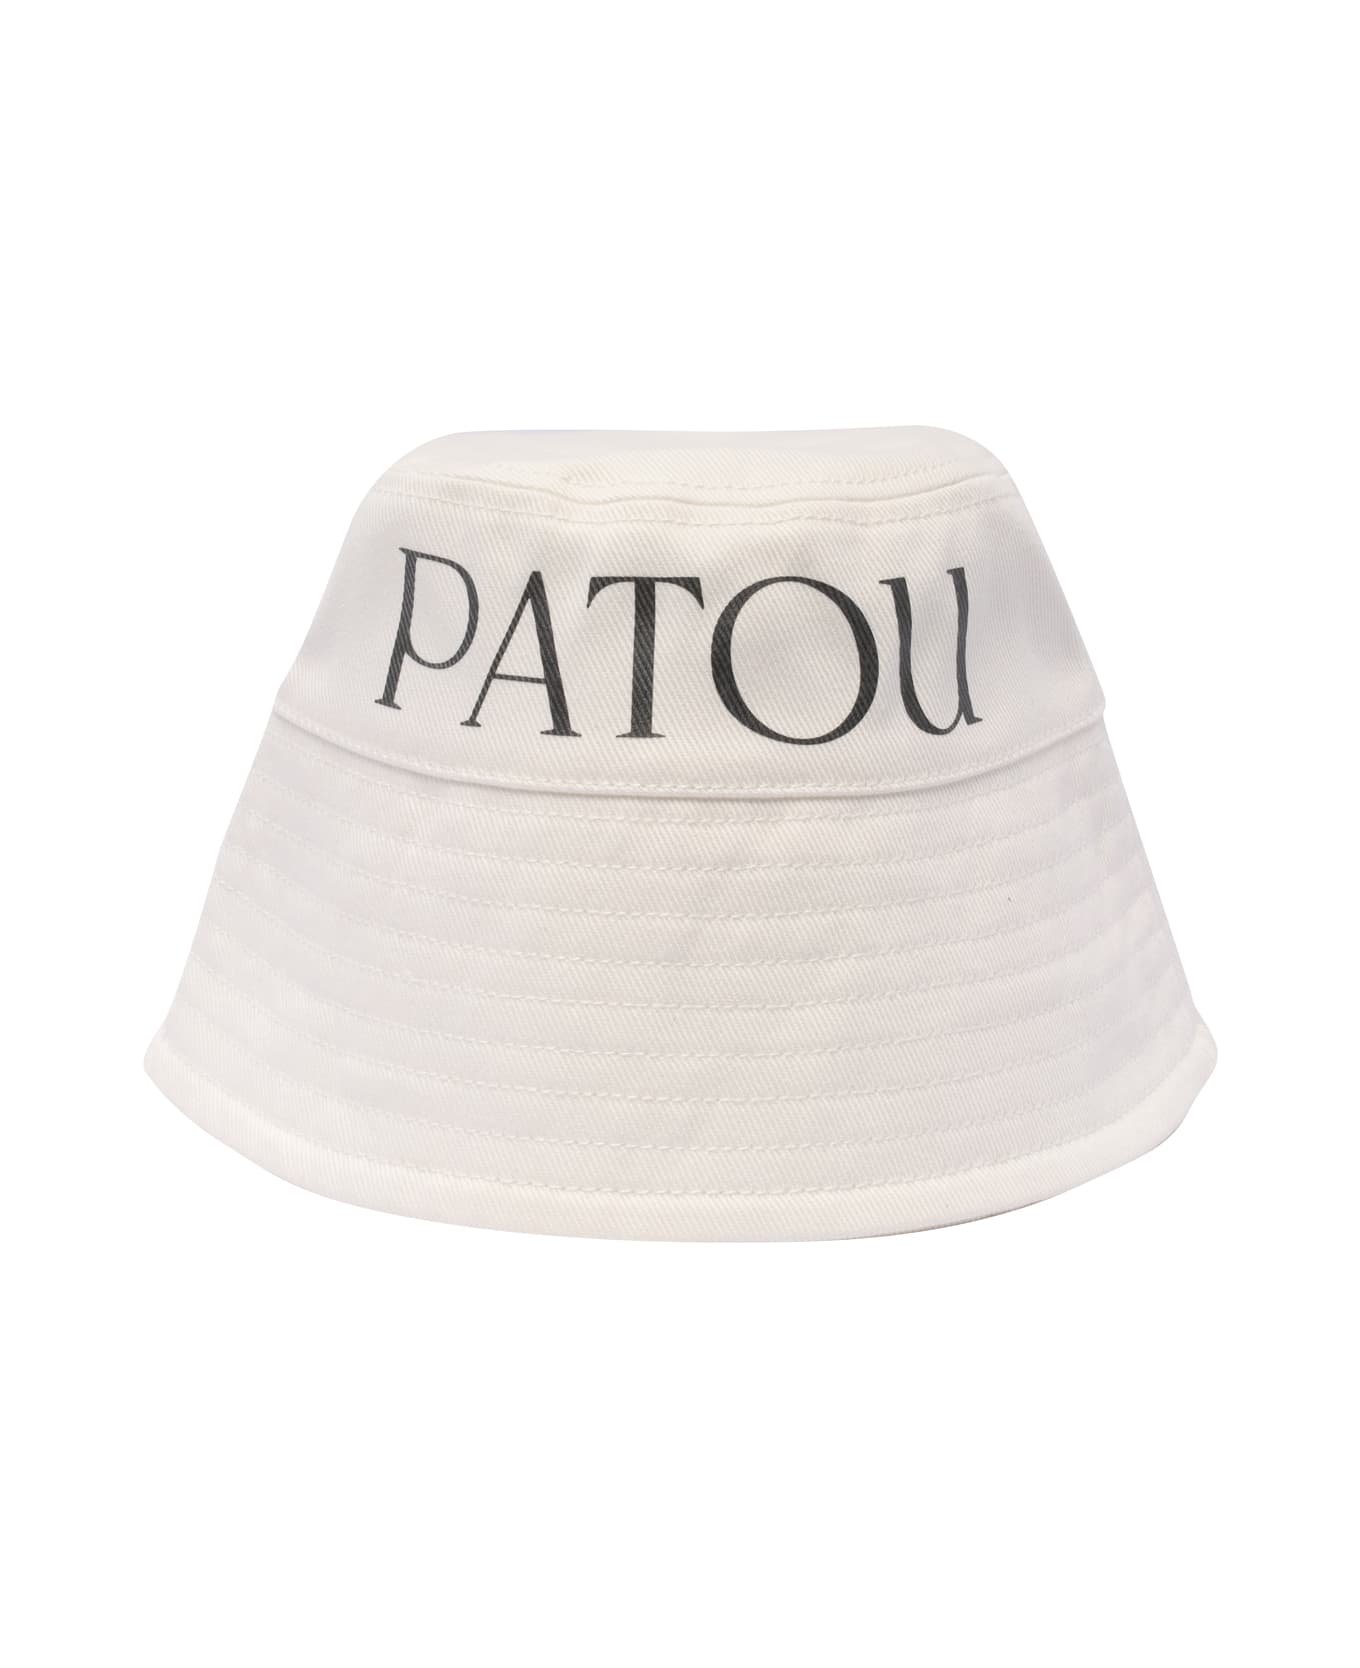 Patou Bucket Hat - WHITE 帽子